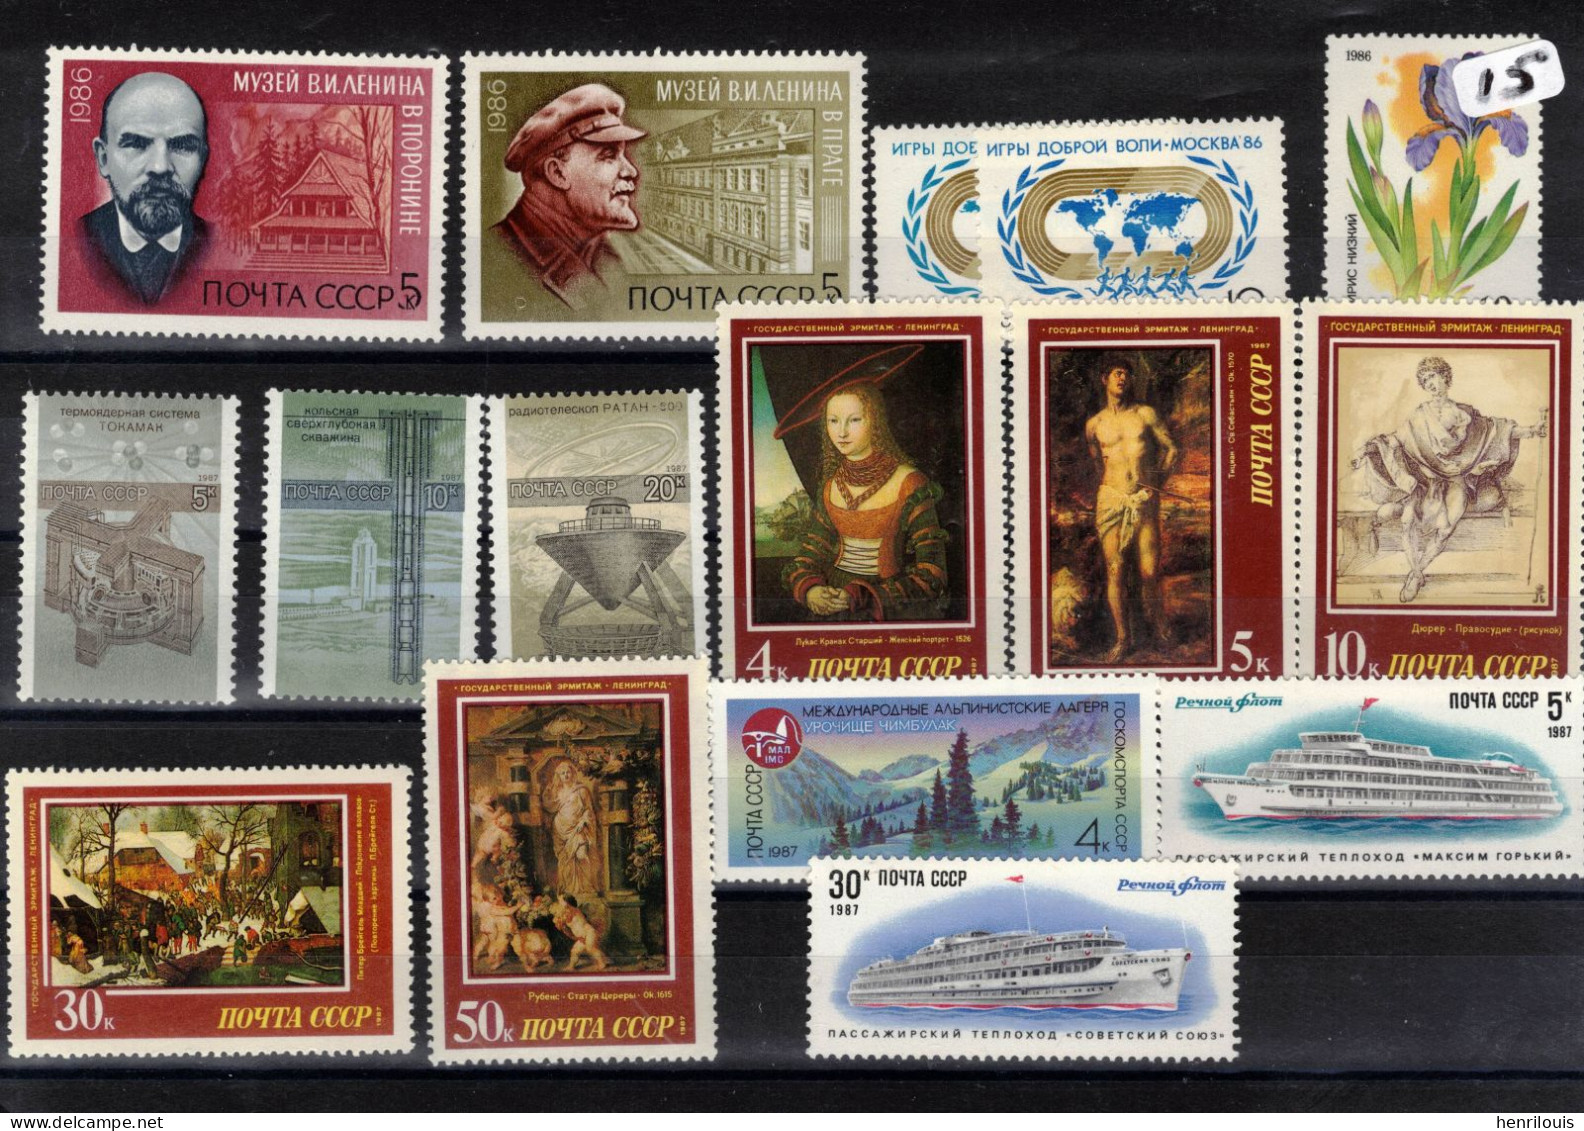 RUSSIE - URSS  Lot de timbres neufs **  de 1985 / 1990  ( ref  056 )  Voir 8 scans